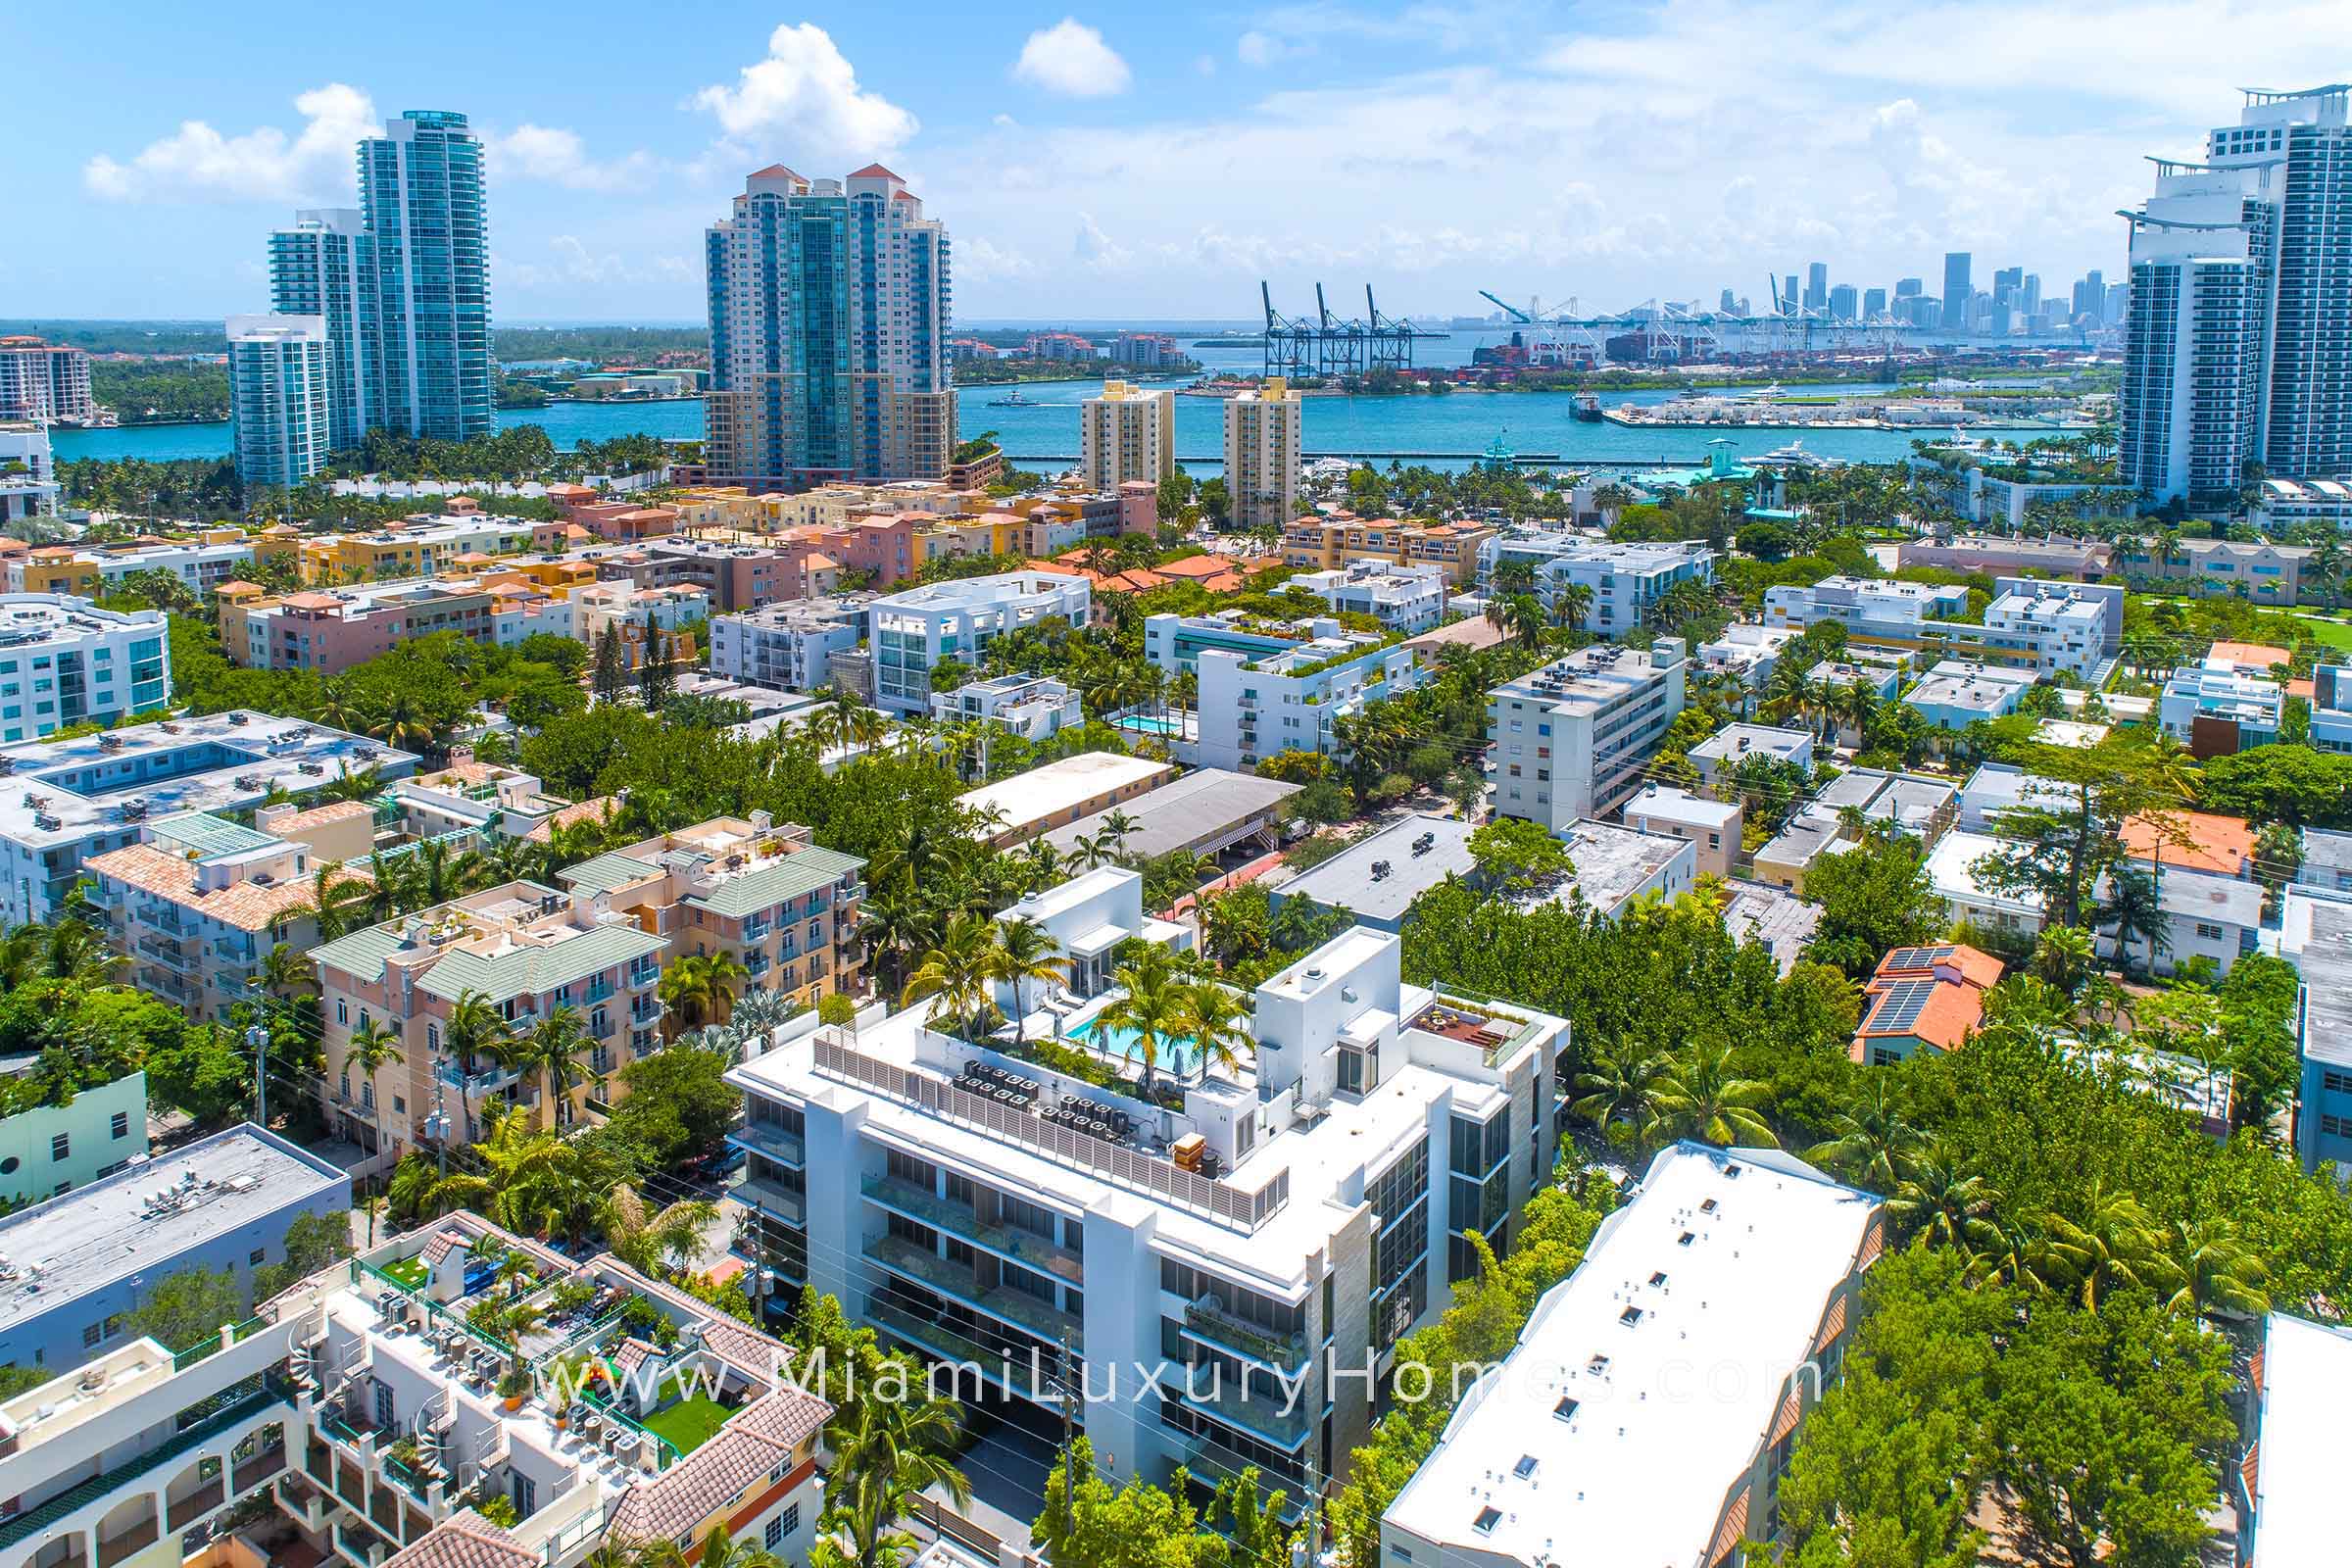 Louver House South Beach Condos in Miami Beach